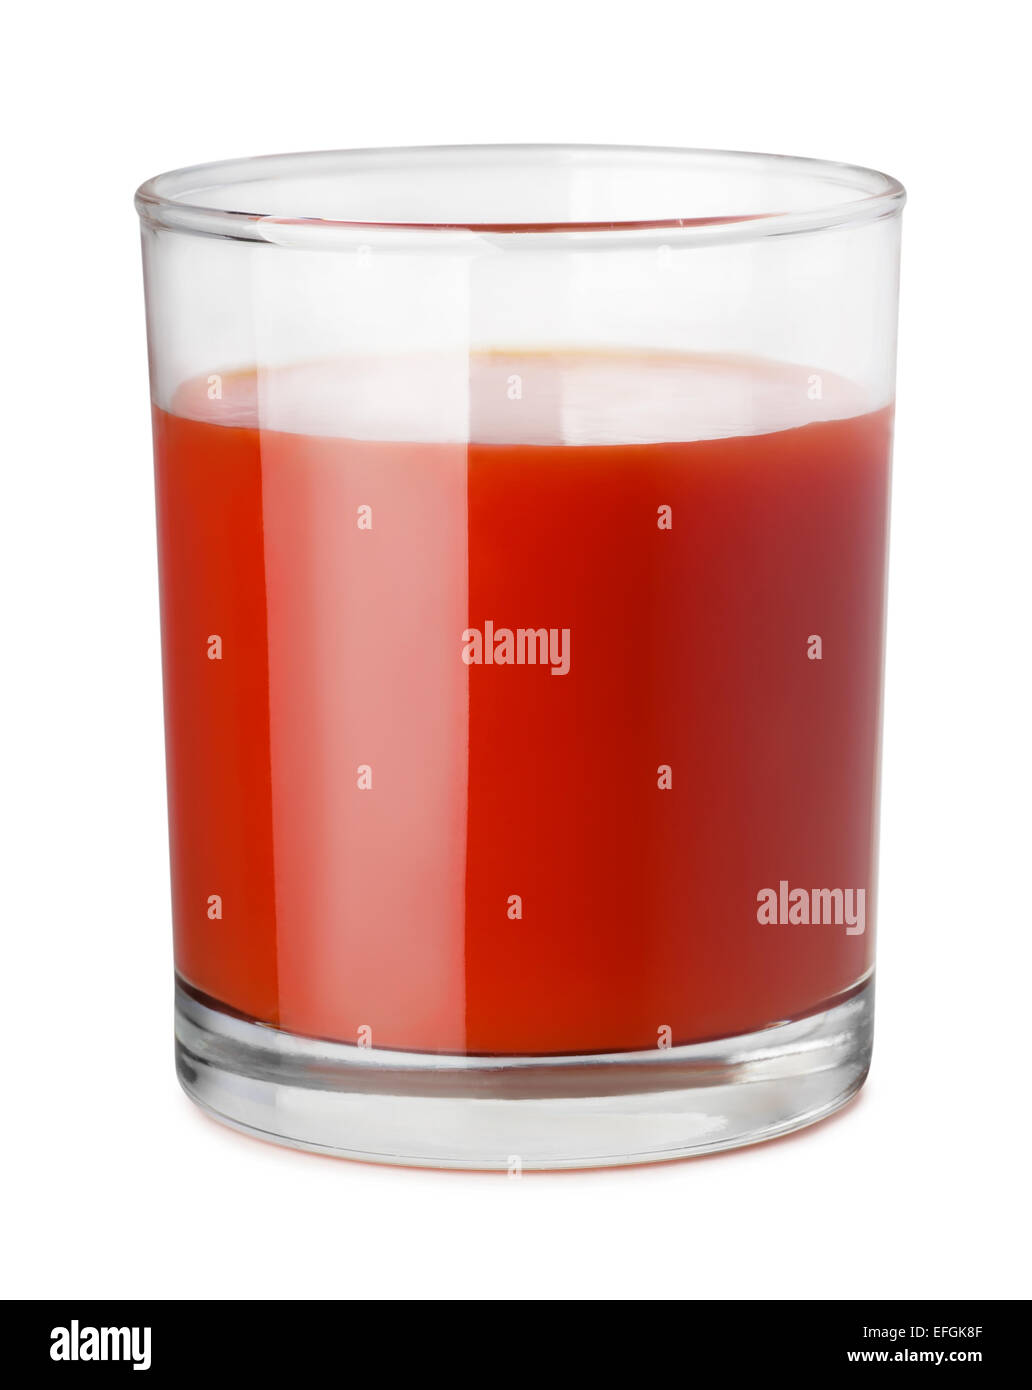 Vaso de jugo de tomate aislado en blanco Foto de stock